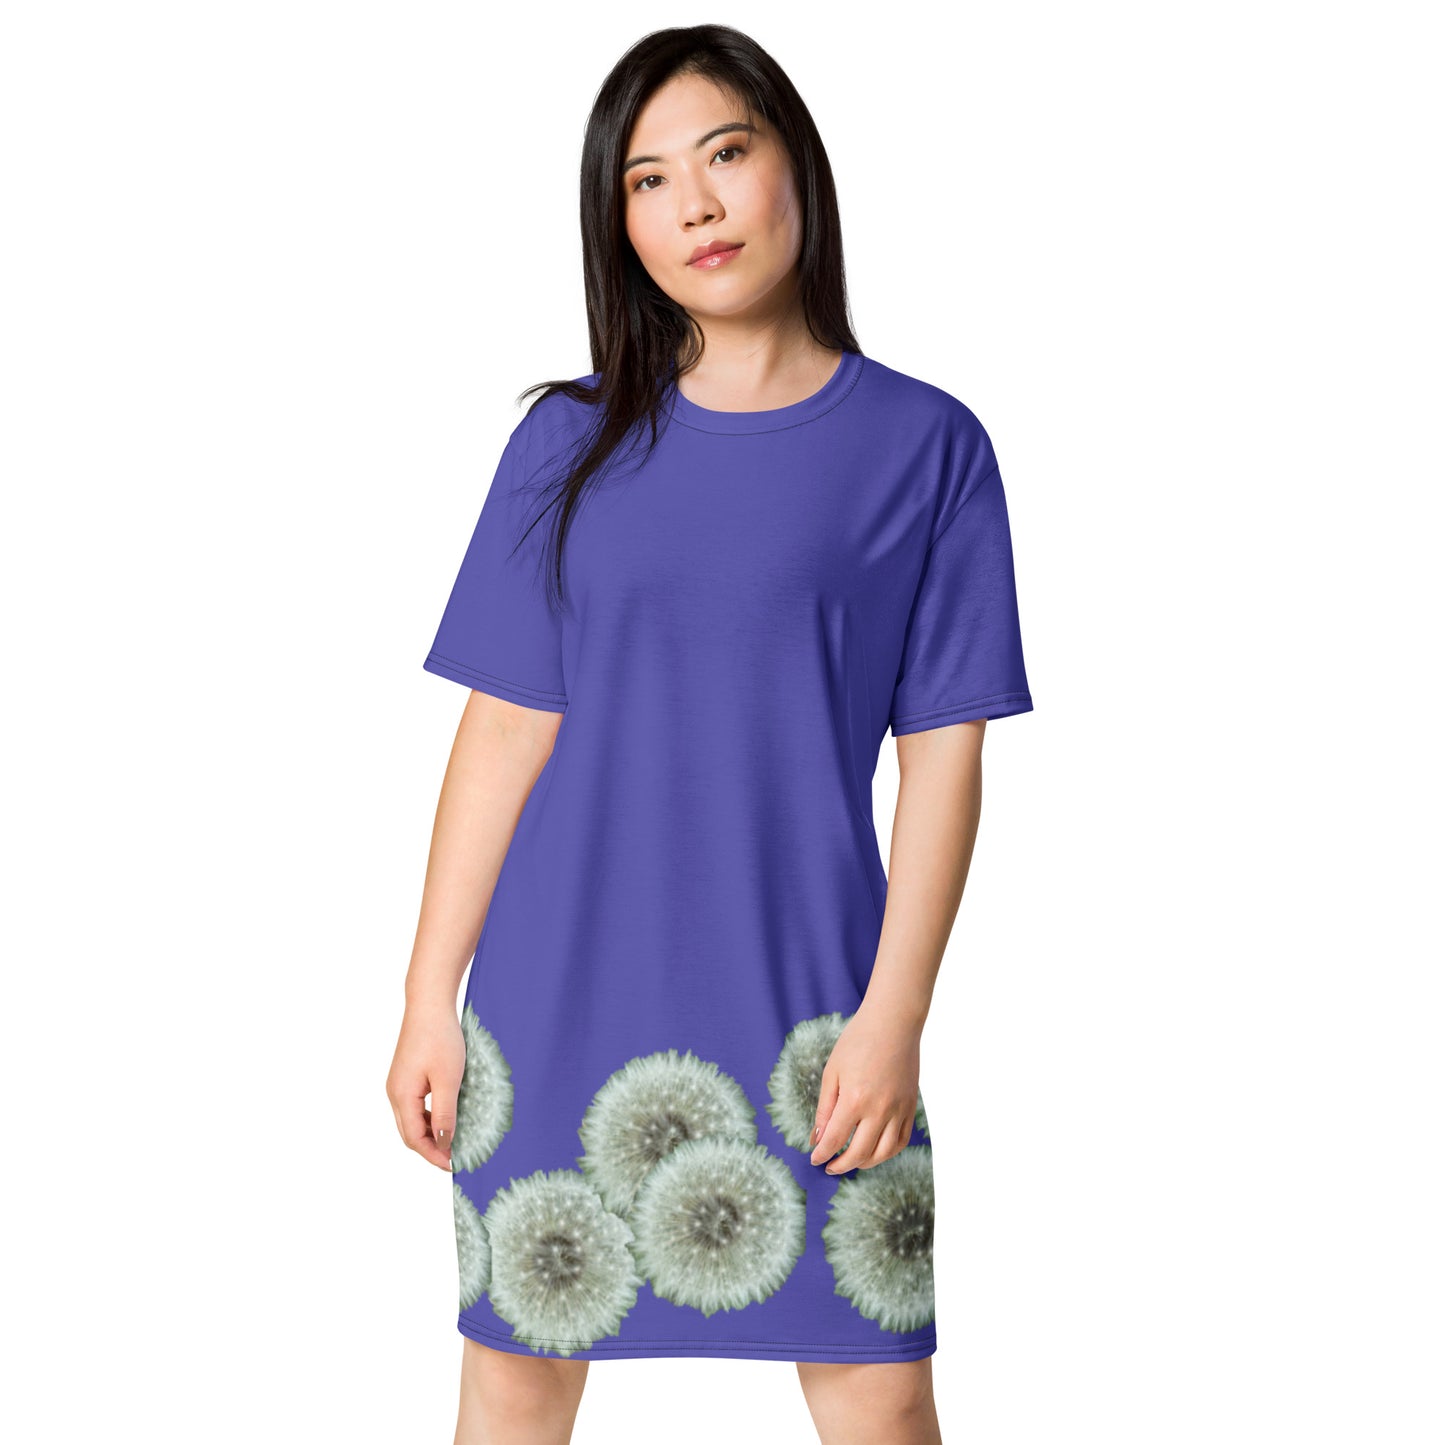 T-shirt dress Dandelions on purple